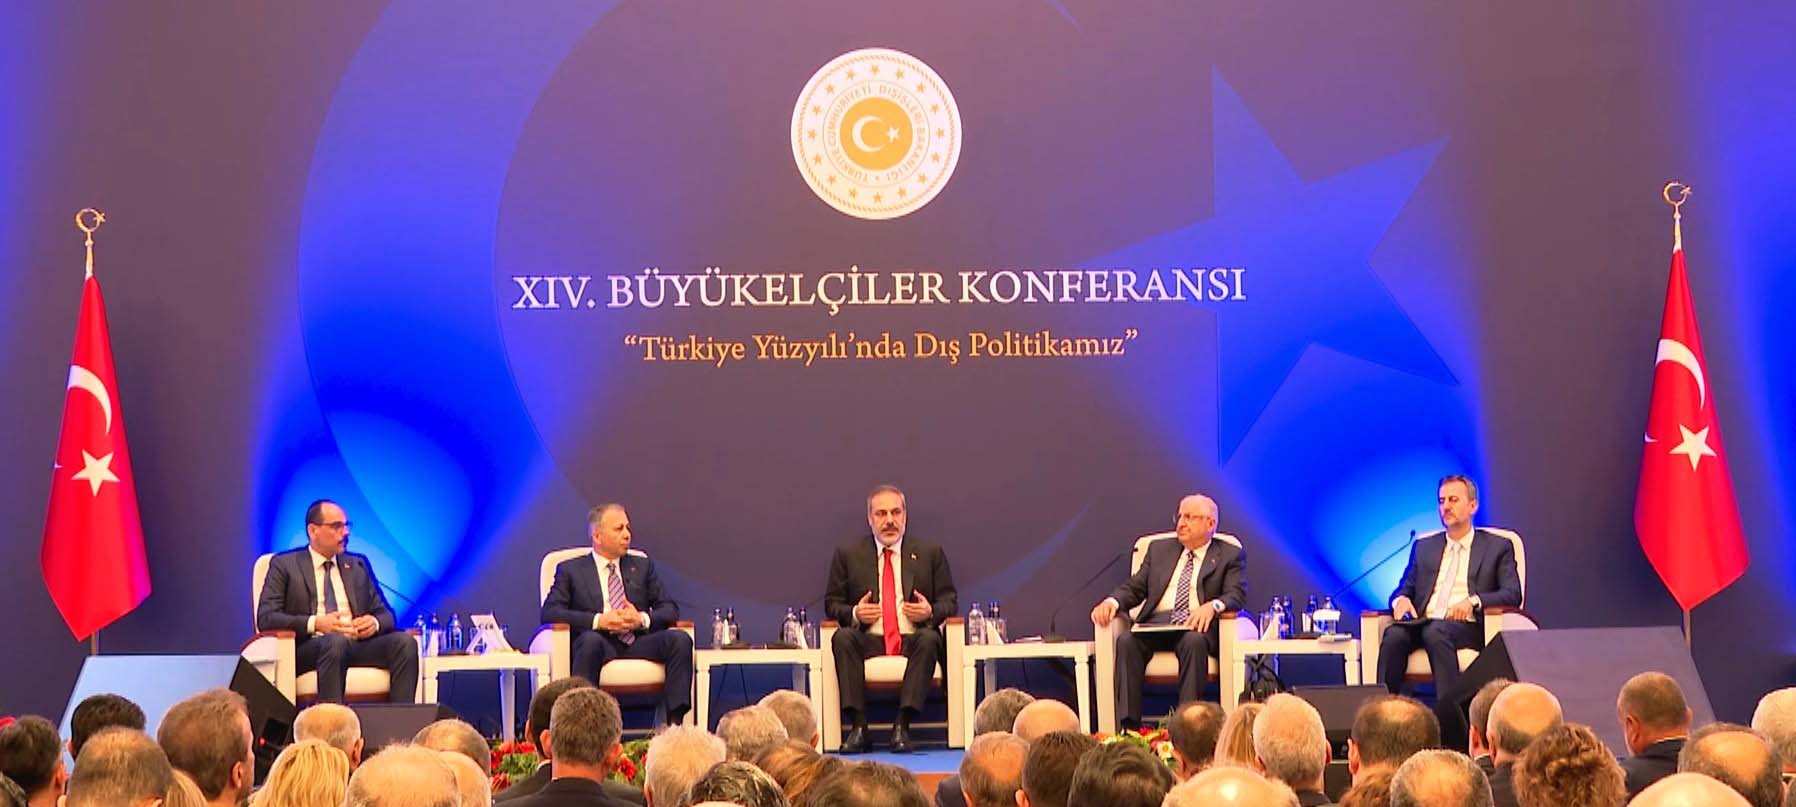 Büyükelçiler Konferansı’nda "Türkiye Yüzyılı’nda Güvenlik Paneli" düzenlendi